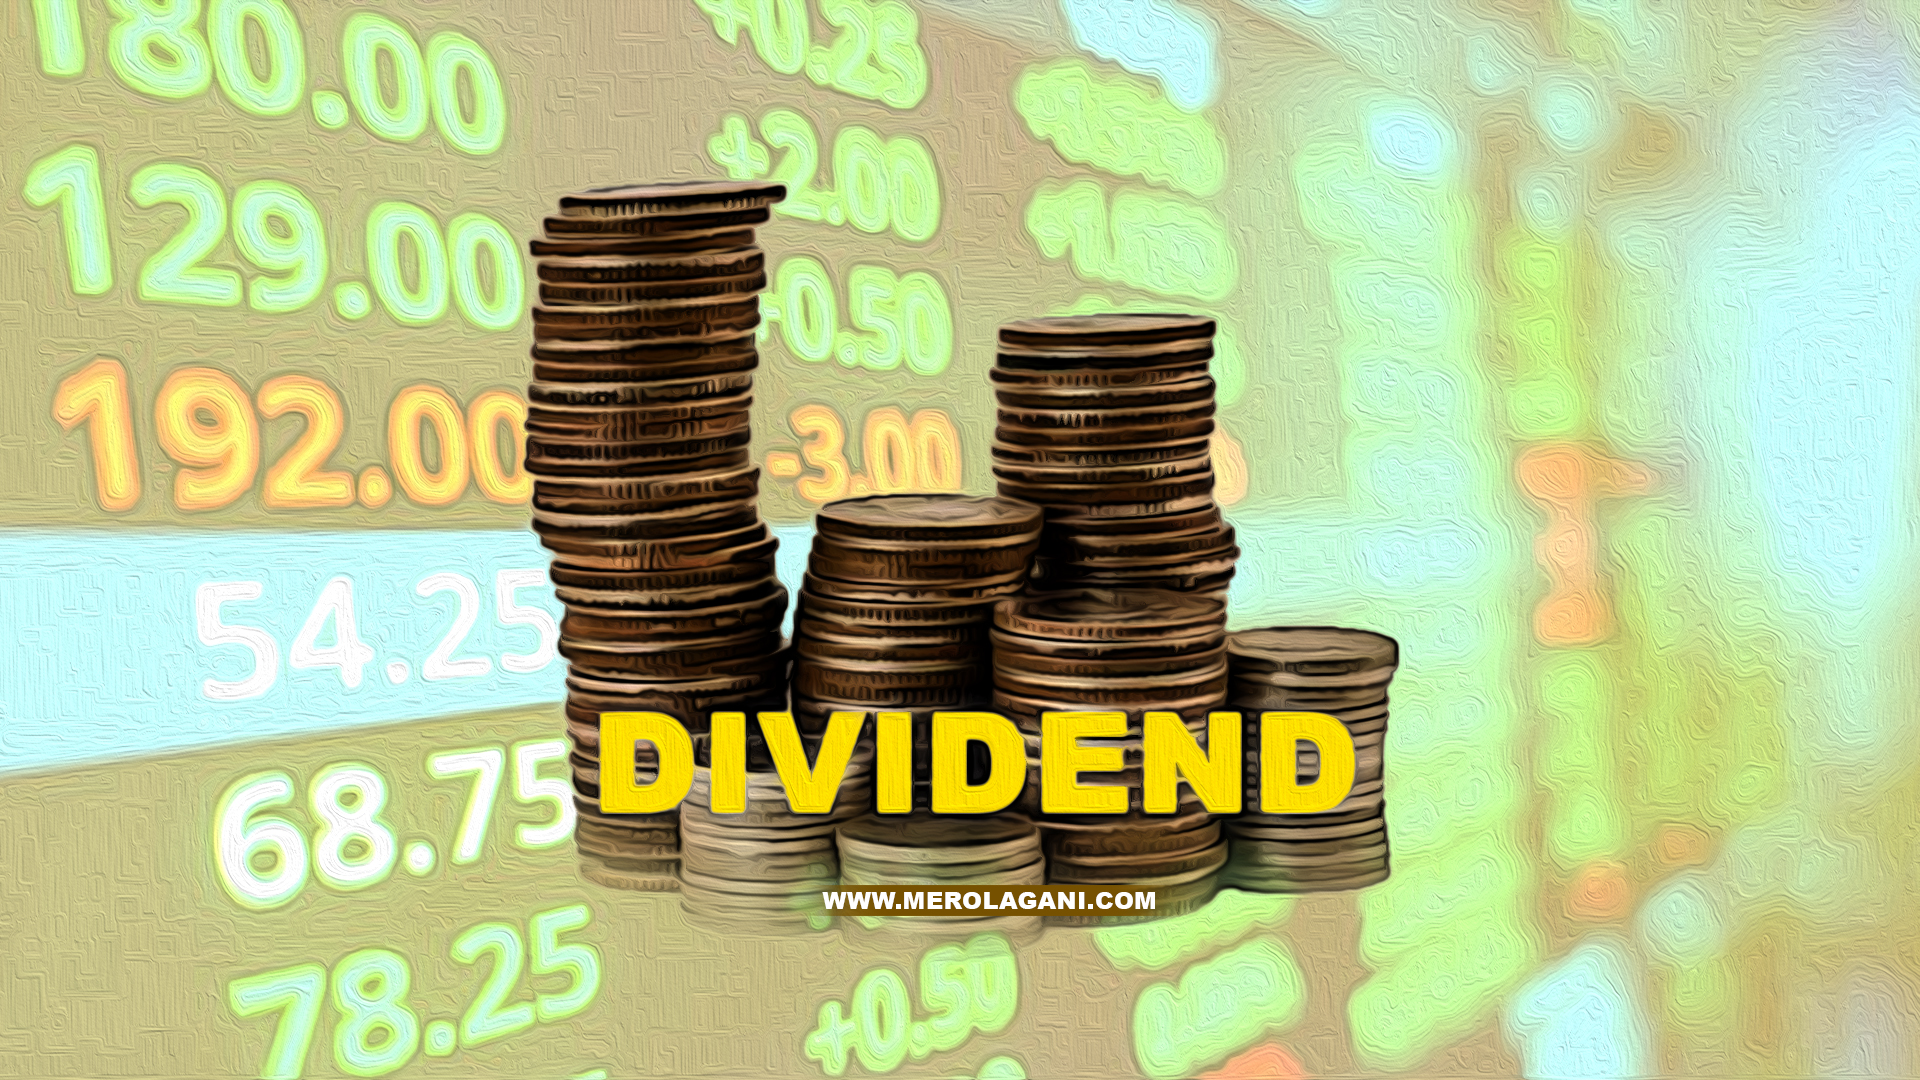 ICFC Finance Announces Dividend